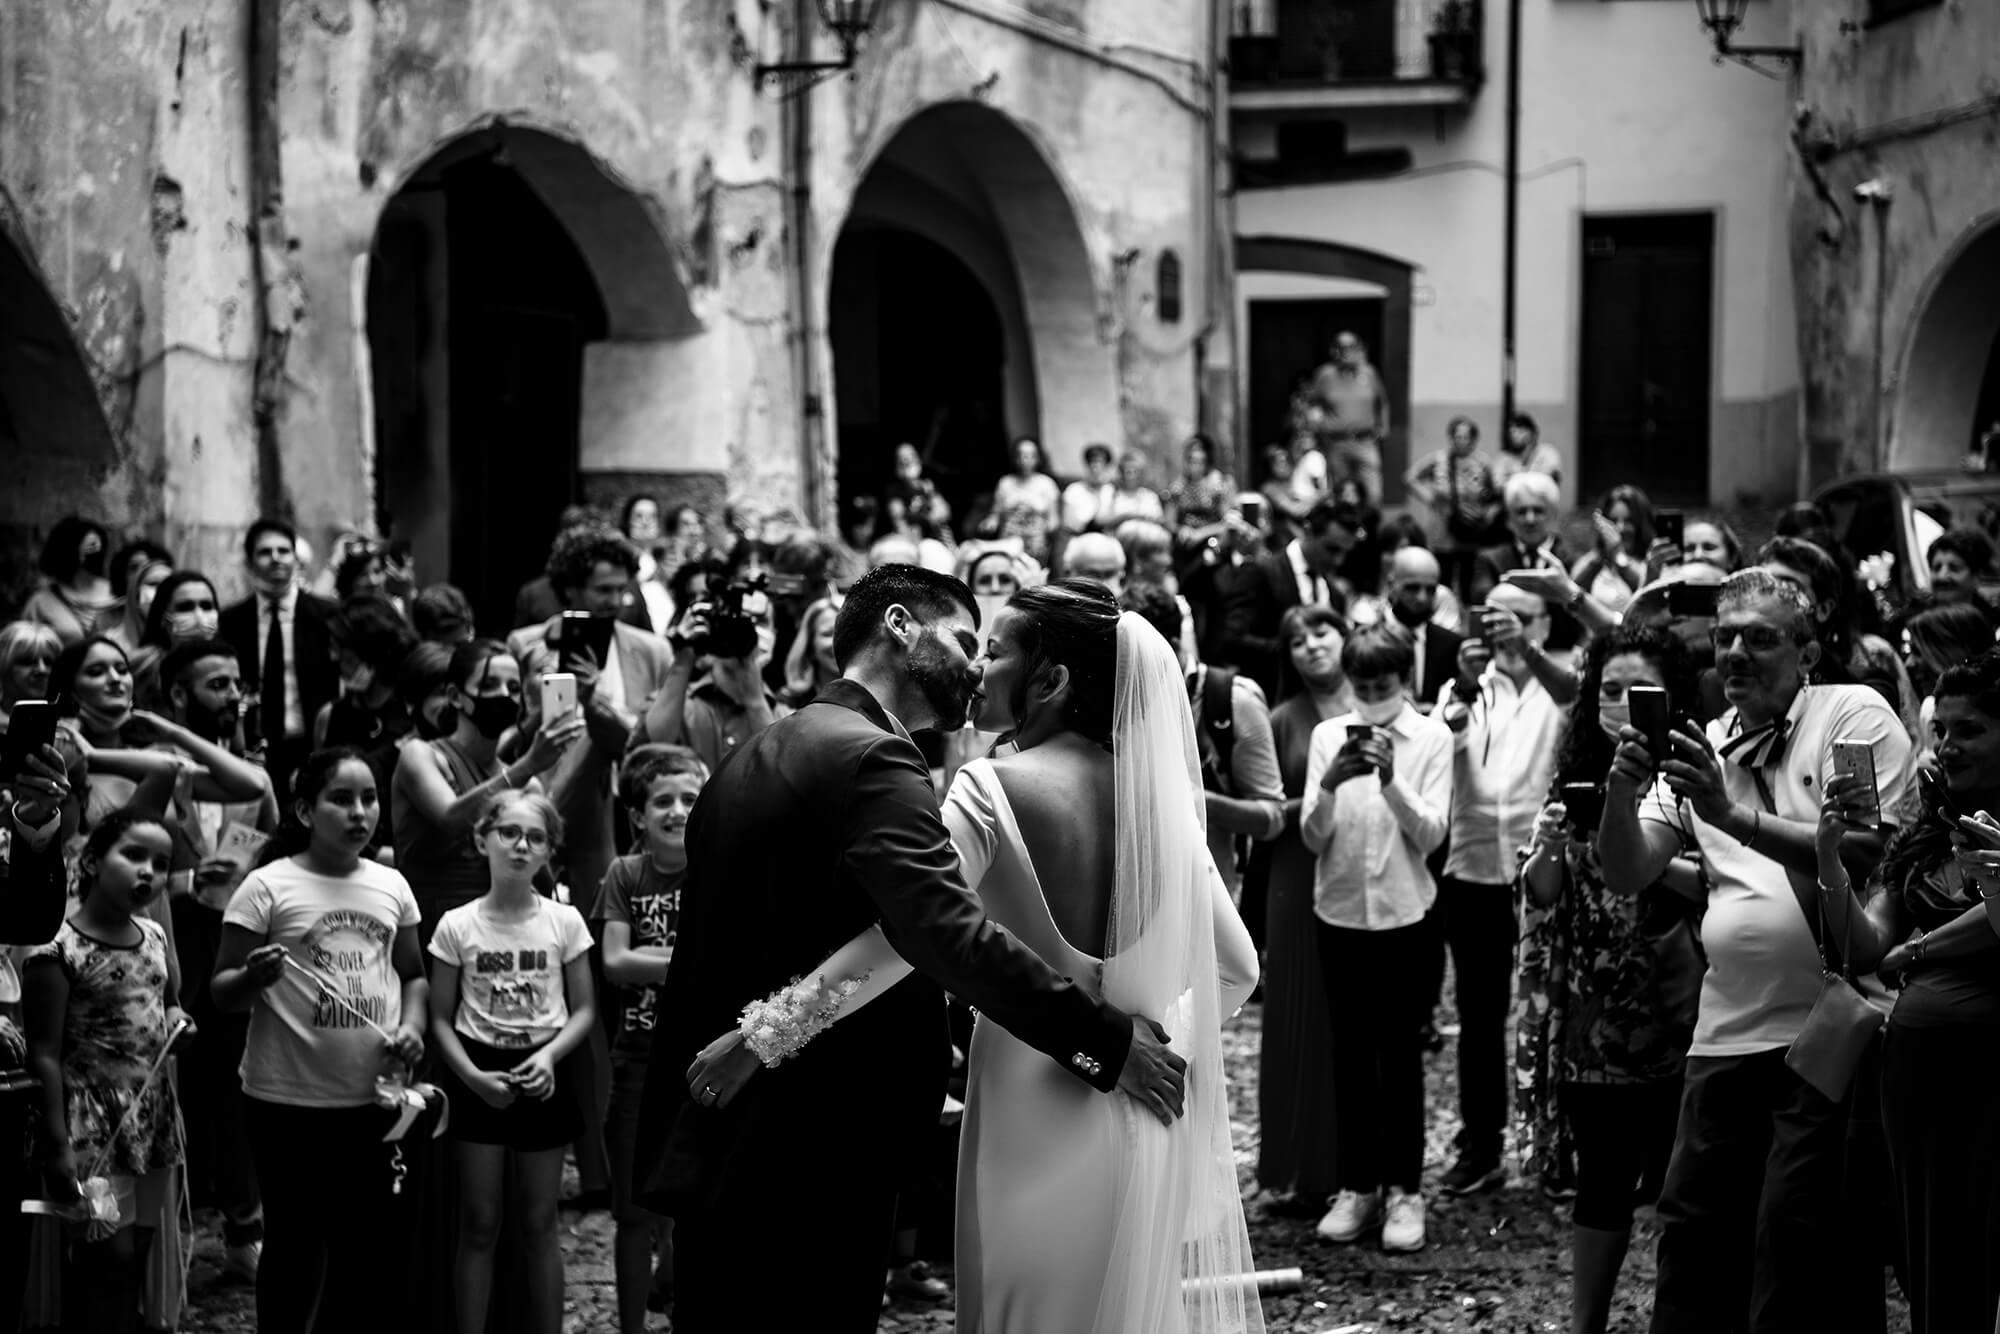 Sono un fotografo di matrimonio in Liguria a cui piace fotografare in maniera molto spontanea e naturale, senza interferire troppo.